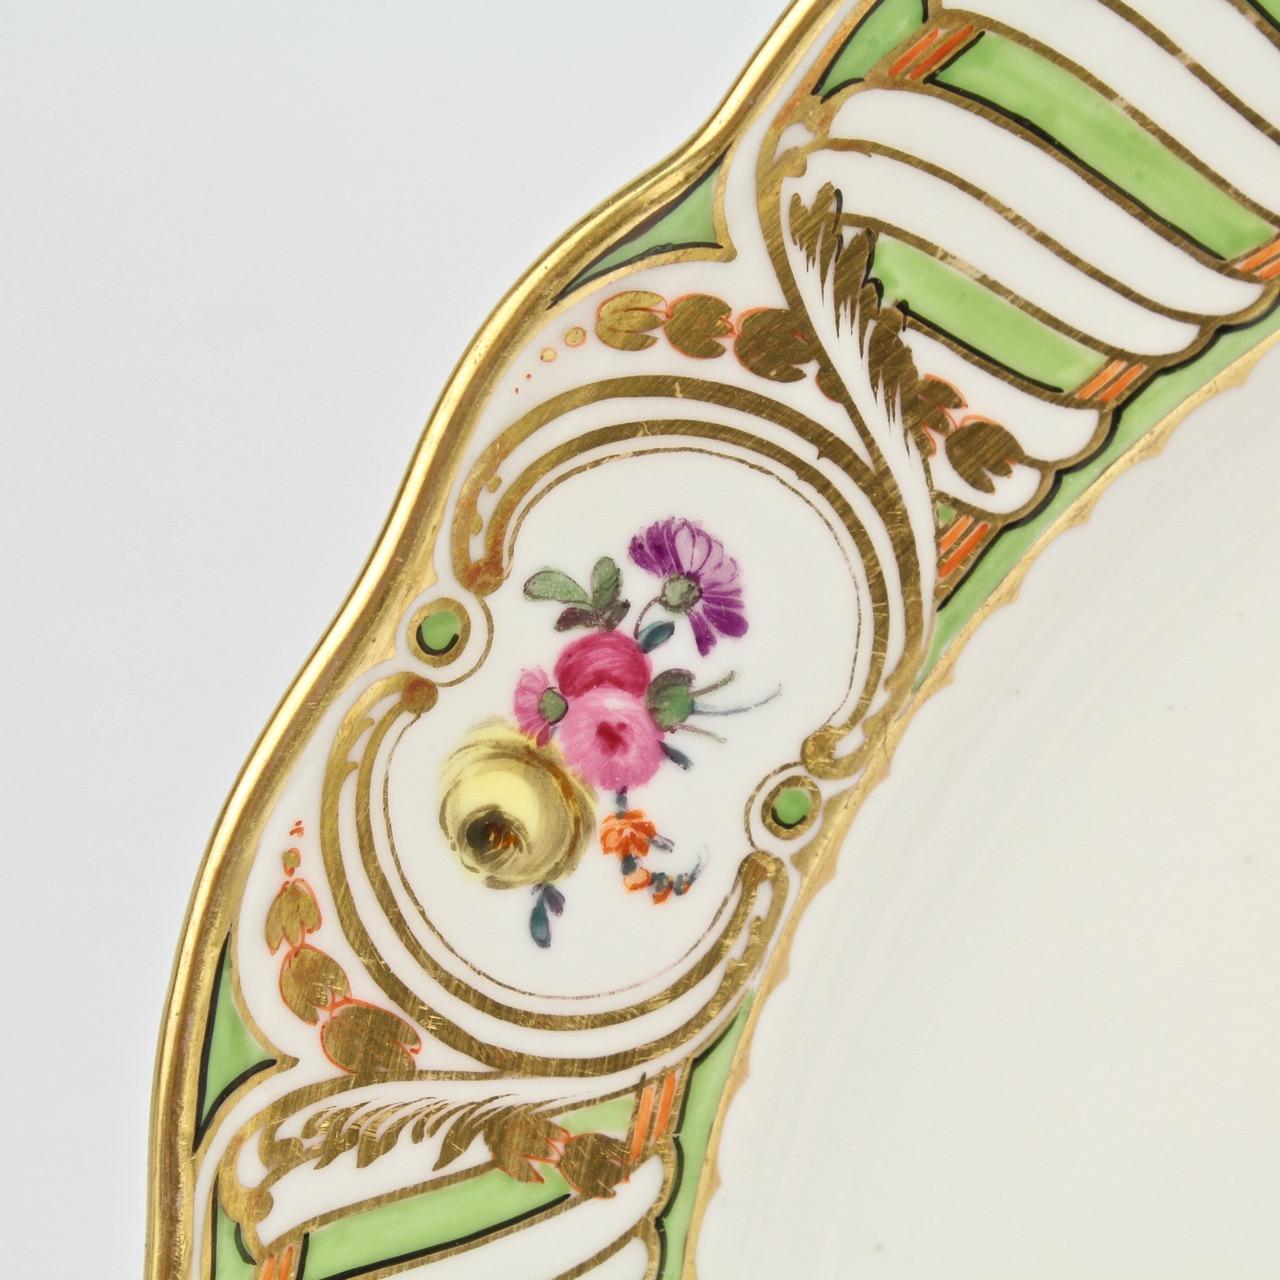 6 Antique Vienna Porcelain Plates with Green Borders & Deutsche Blumen Flowers 7